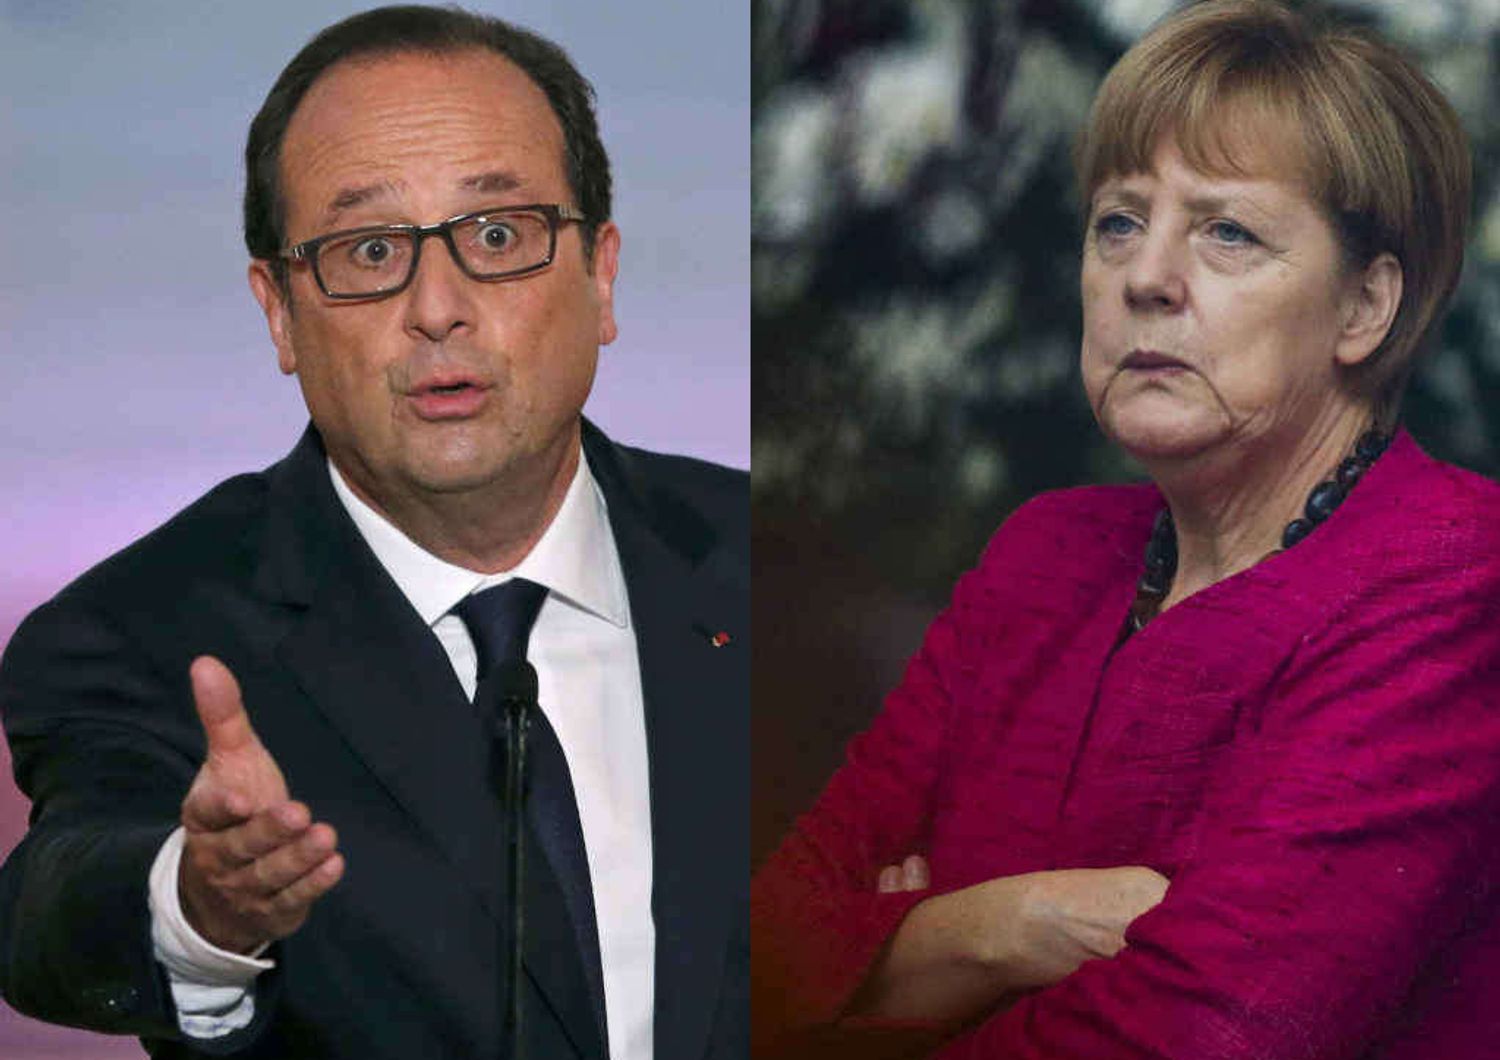 La Francia si ribella all'austerita' Merkel, gli impegni si rispettano